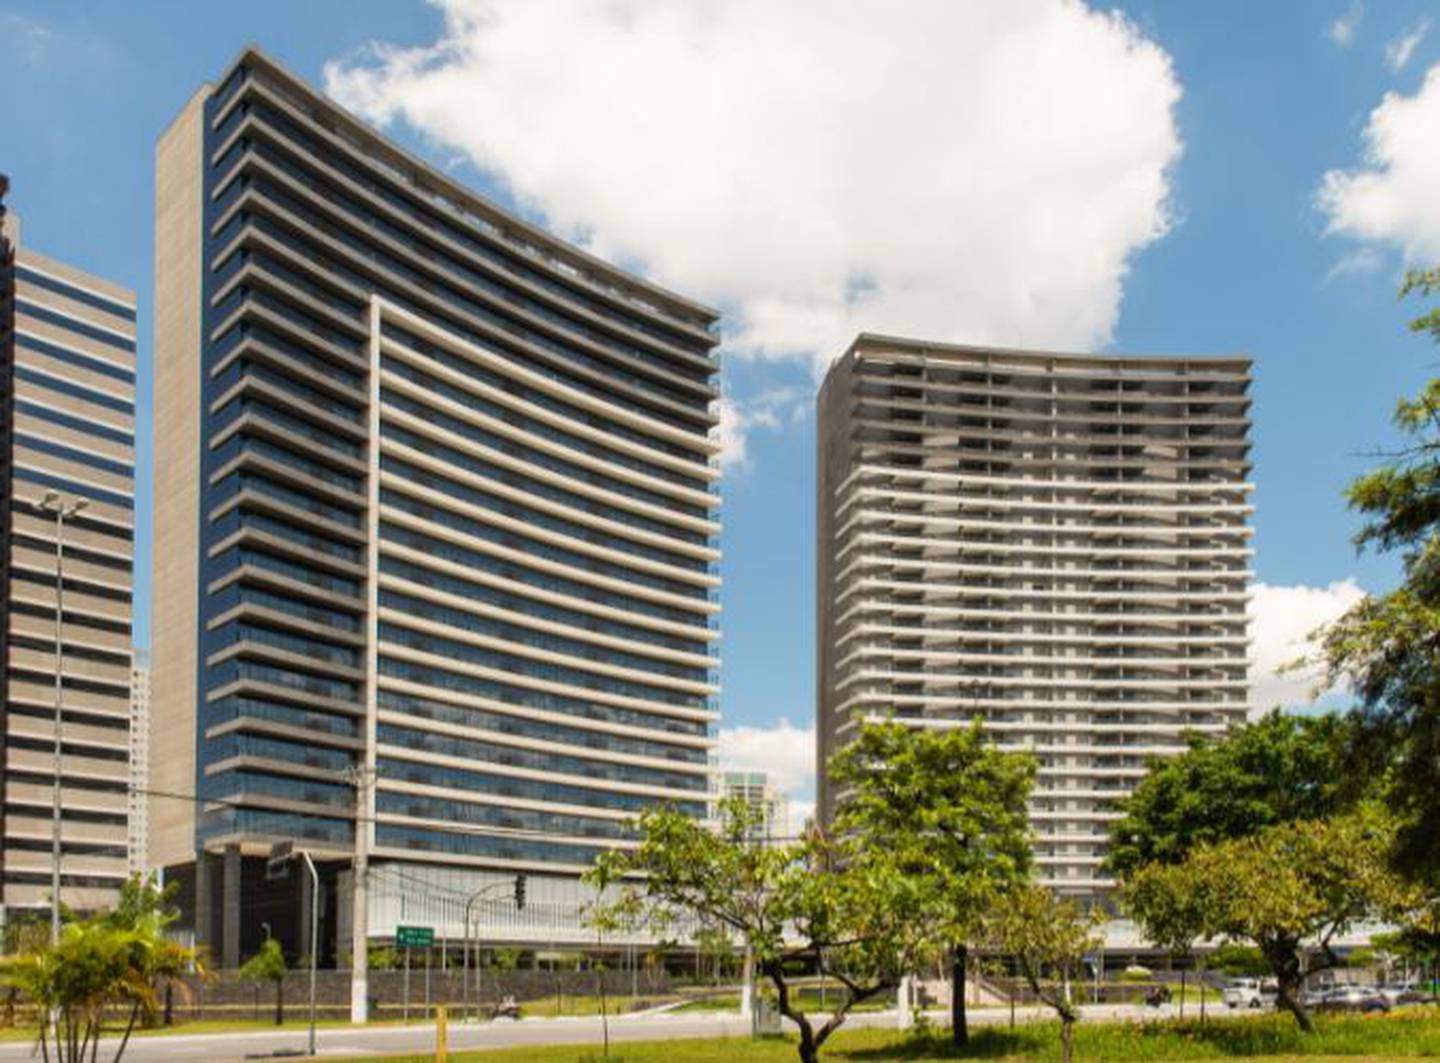 Projeto da Tecnisa prevê 11 condomínios independentes com torres na região da Barra Funda, zona oeste de São Paulo